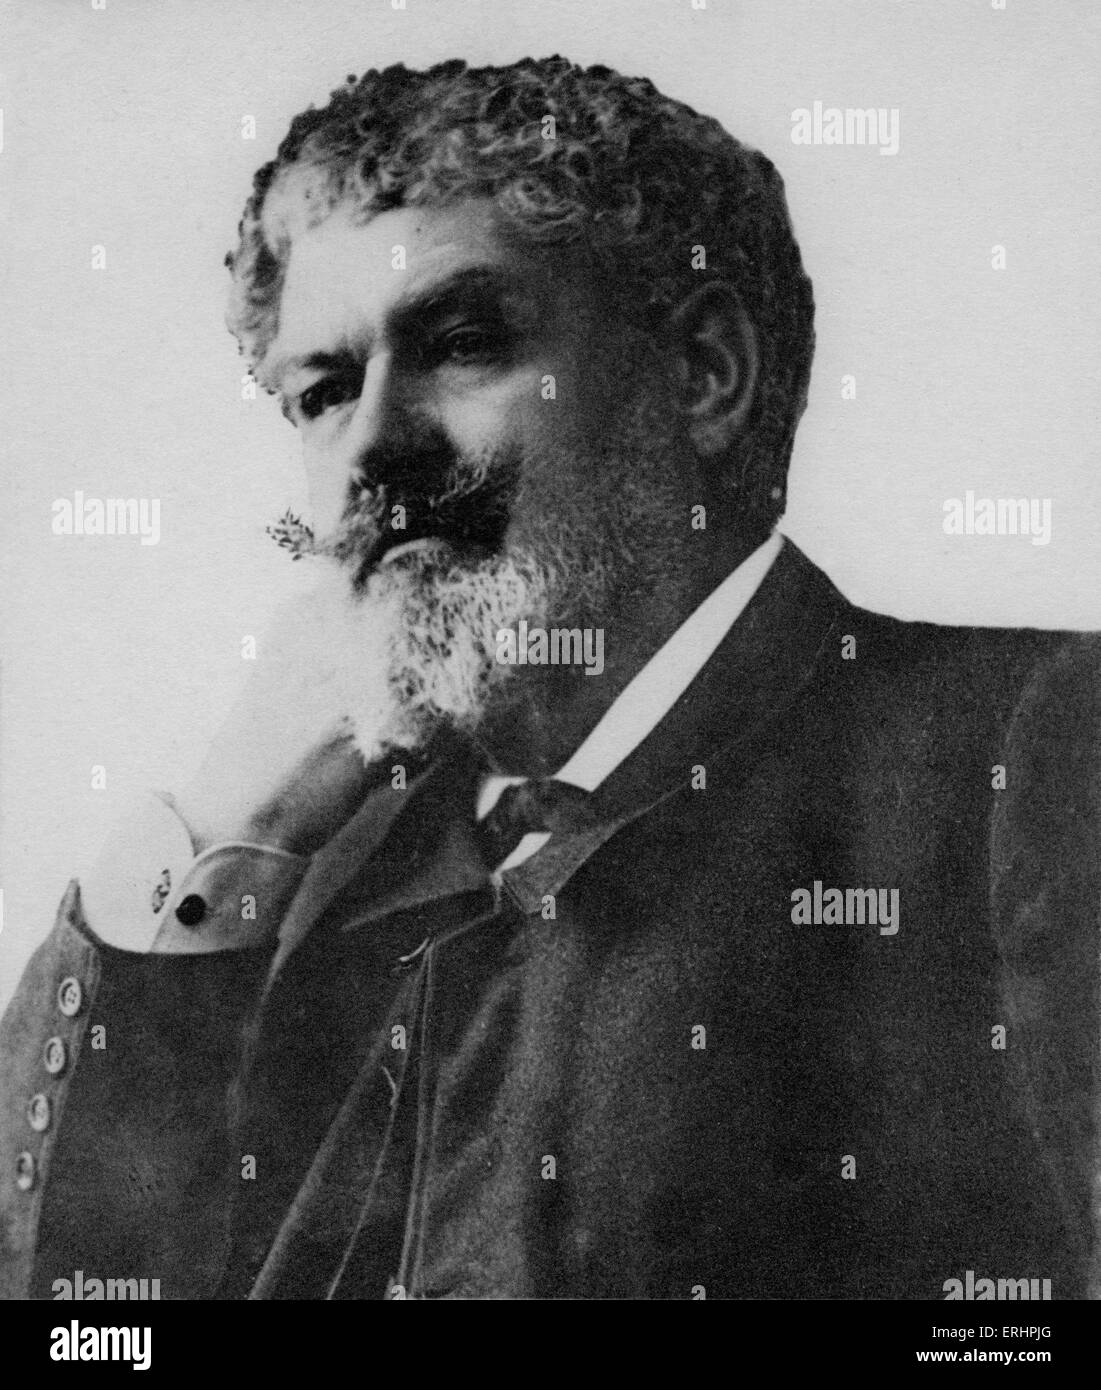 Jean Richepin - französischer Dichter, Schriftsteller und Dramatiker: 4. Februar 1849 - 12. Dezember 1926.  Foto: Manuel. Stockfoto